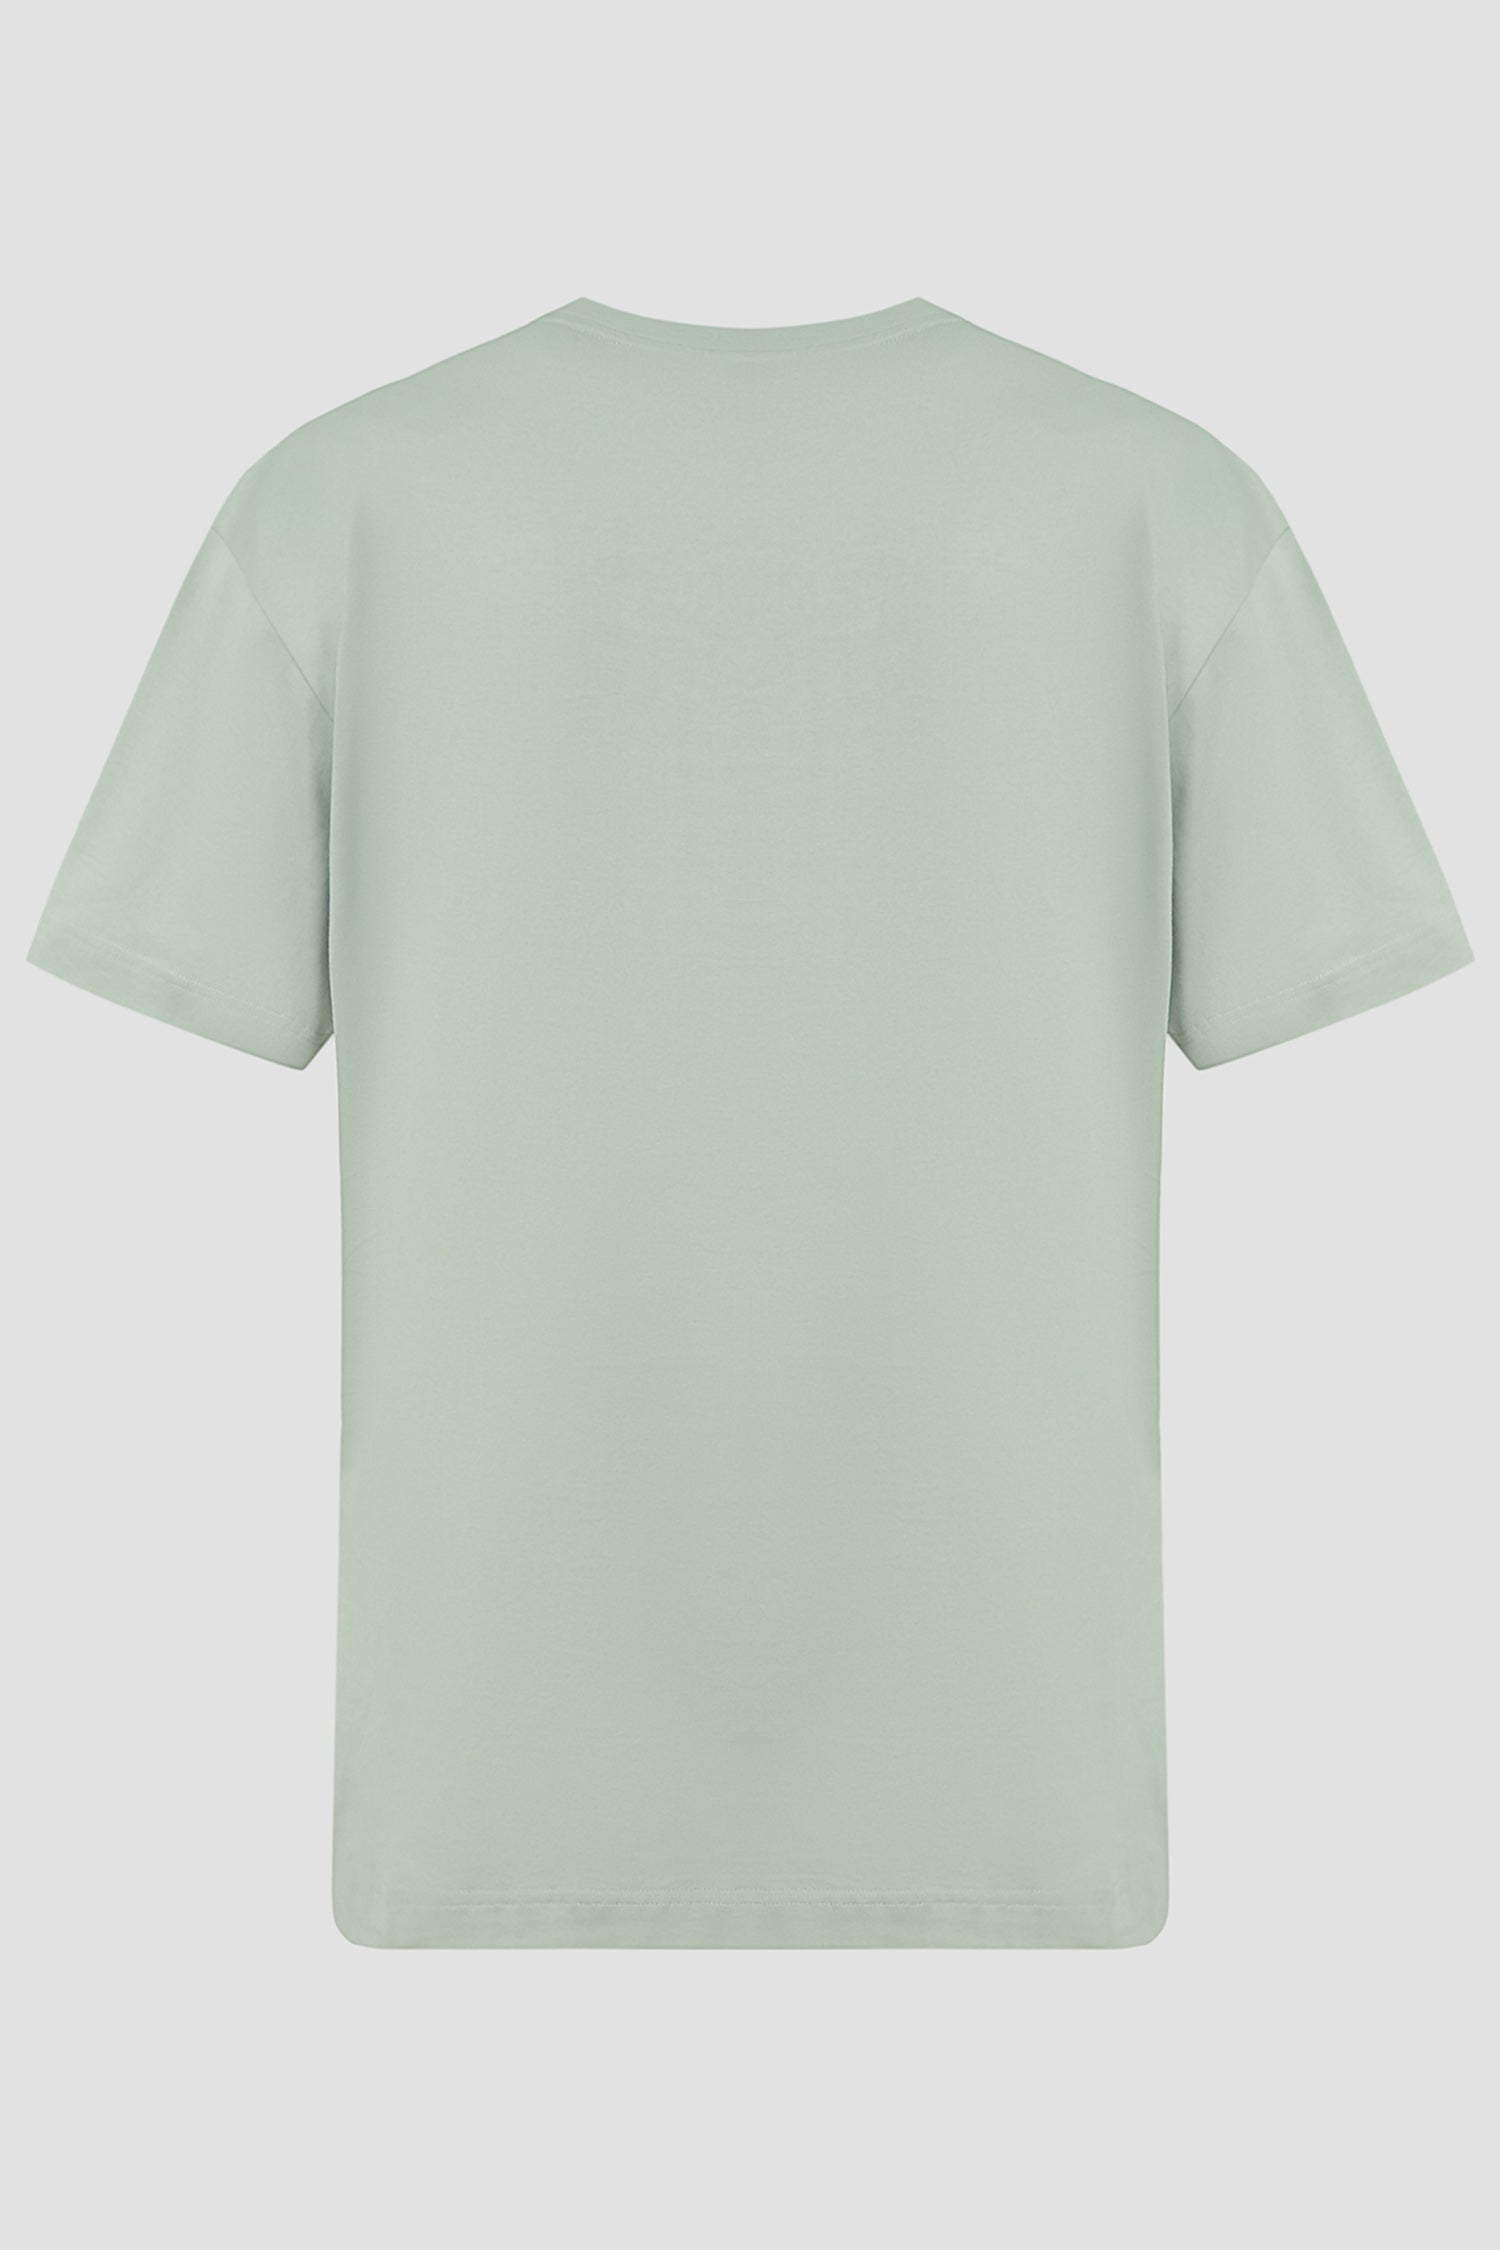 BOSS - TESSIN 88 Open Green Cotton T-Shirt 50512118 373